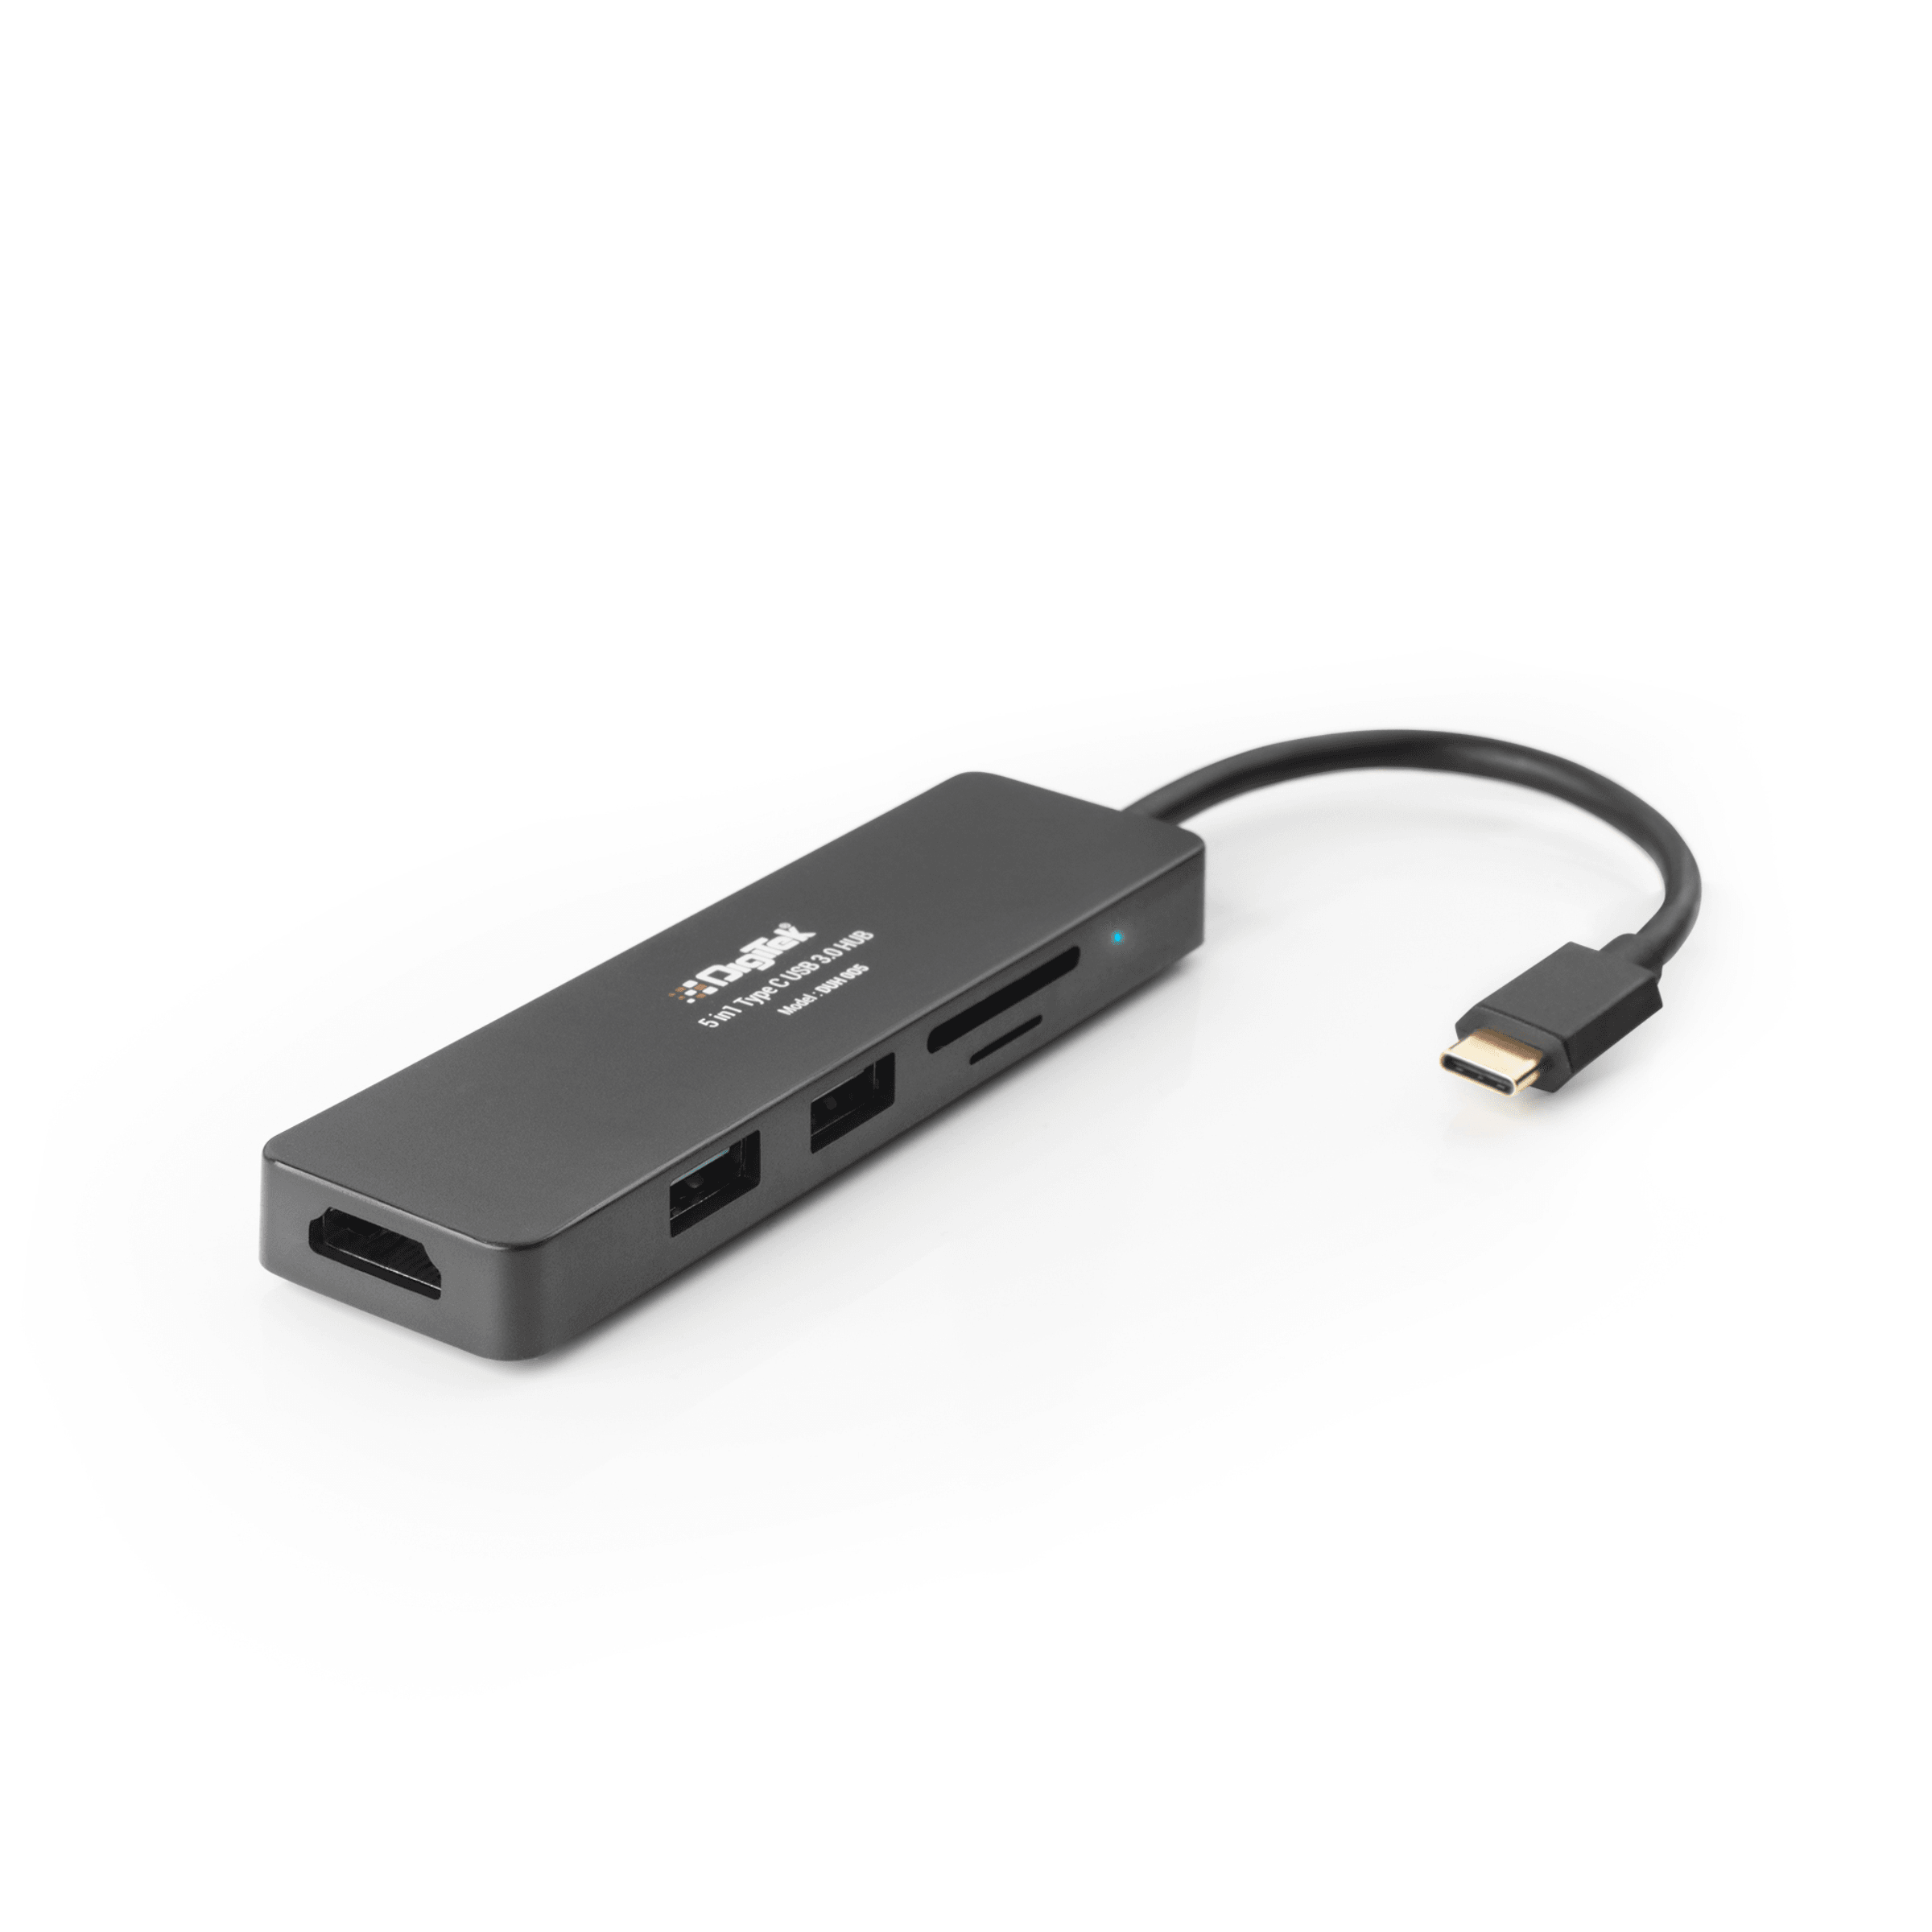 Digitek (DUH 005)USB Hub 5 in 1, 3 USB Port 2.0 & 2 TF & SD Slots Data Transfer Upto 480Mbps Compatible for MacBook, DELL, Computers & Other laptops, Black - Digitek